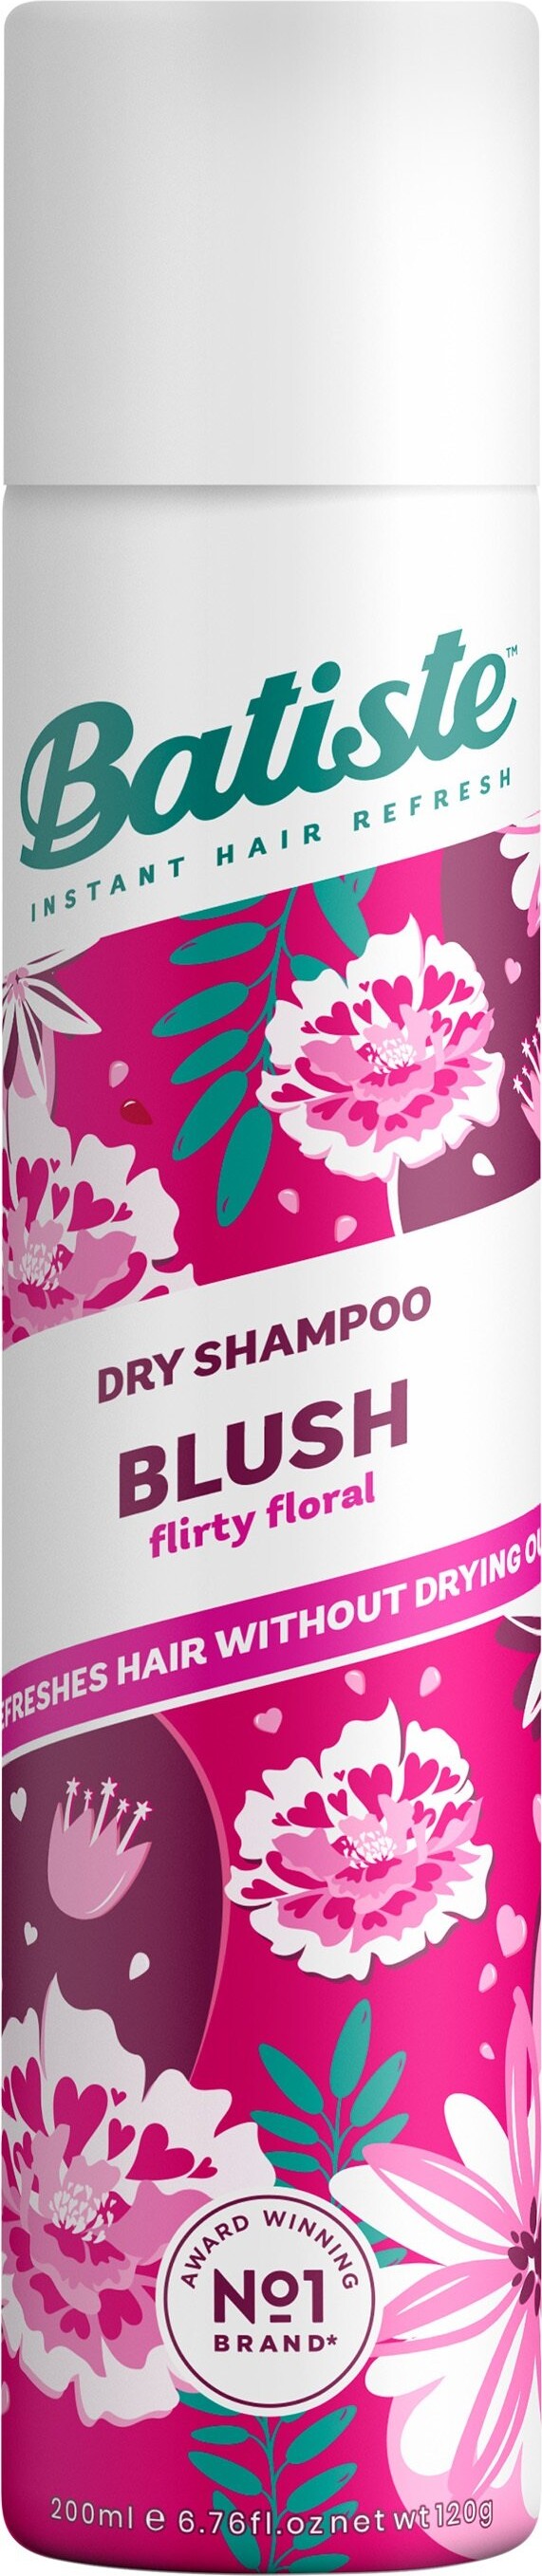 Billede af Batiste Tørshampoo - Floral & Flirty Blush 200 Ml